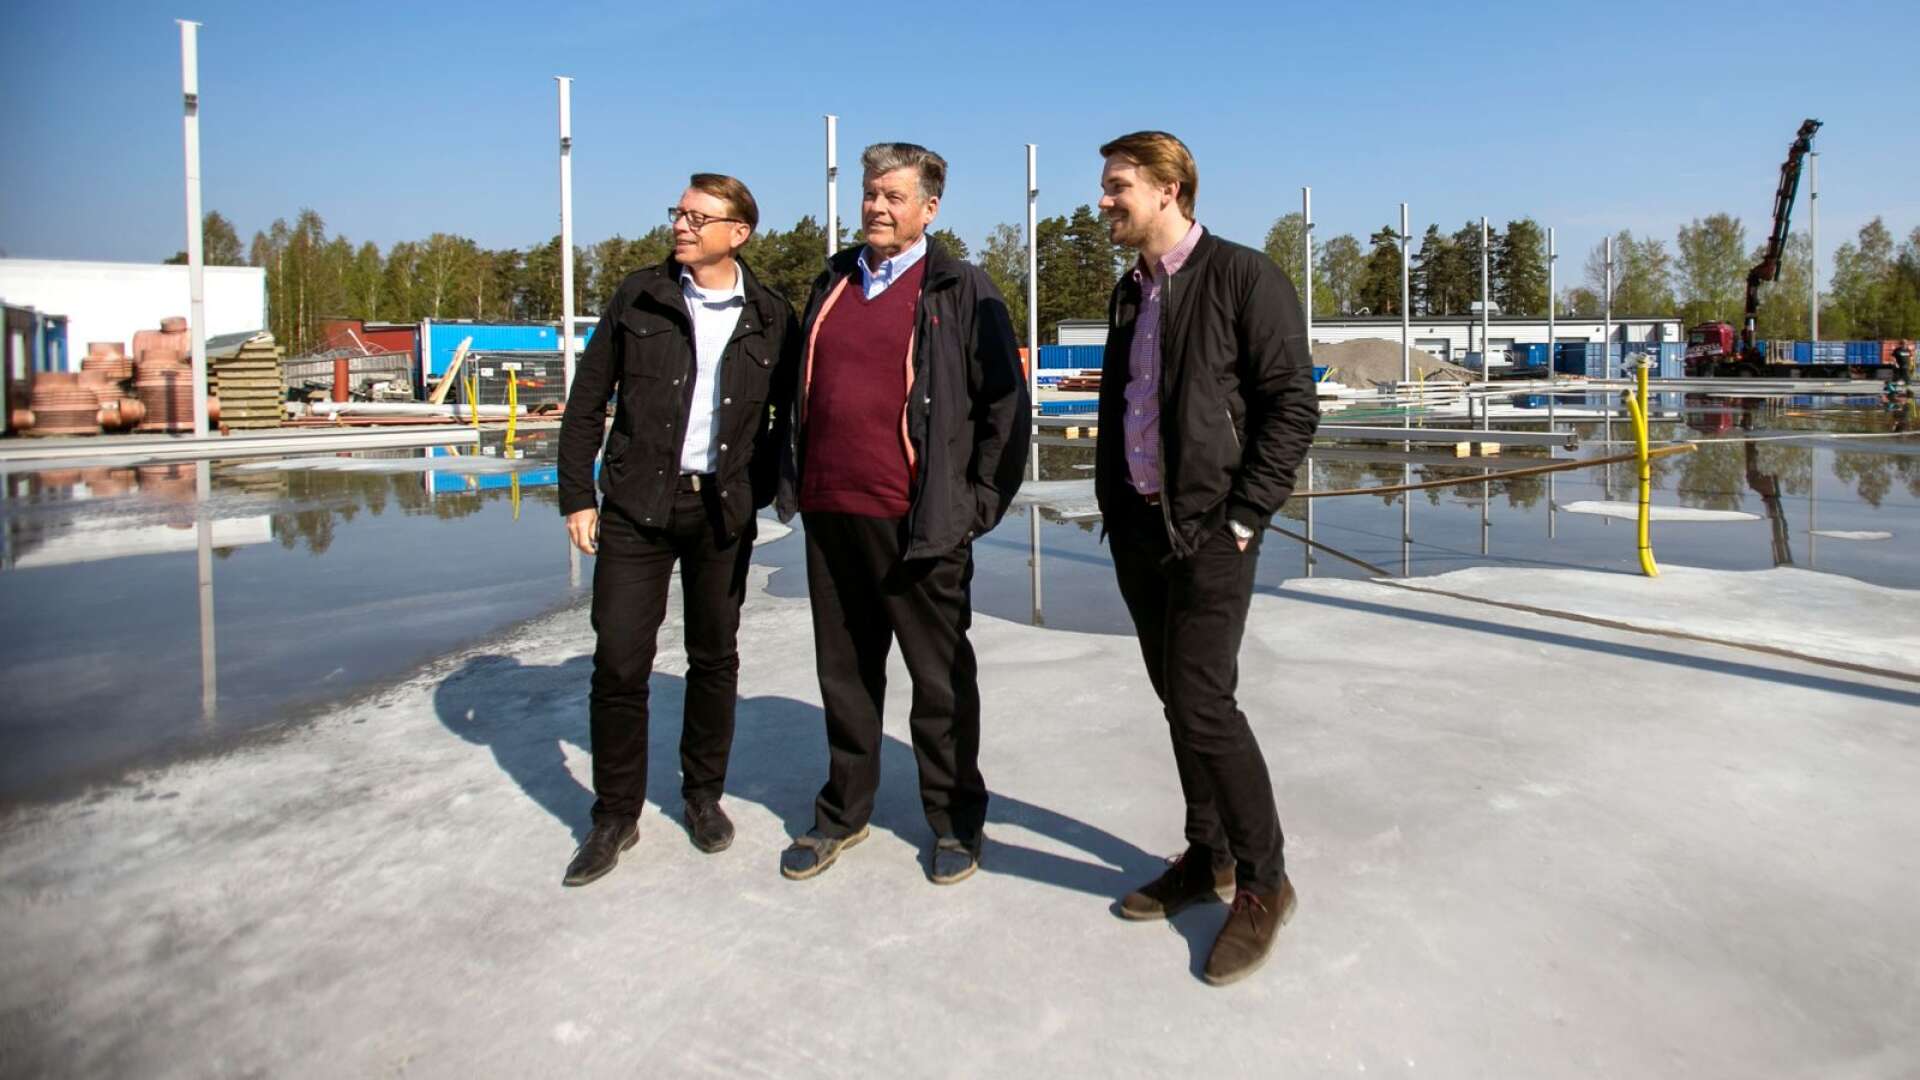 Huspartner har inlett byggandet av företagets nya fabrik på Ilanda industriområde i Skåre. Man flyttar produktionen dit från Råda. På bilden ses arkitekten Lars Axelsson, ägaren Kenneth Wahlström och vd:n Fredrik Persson.